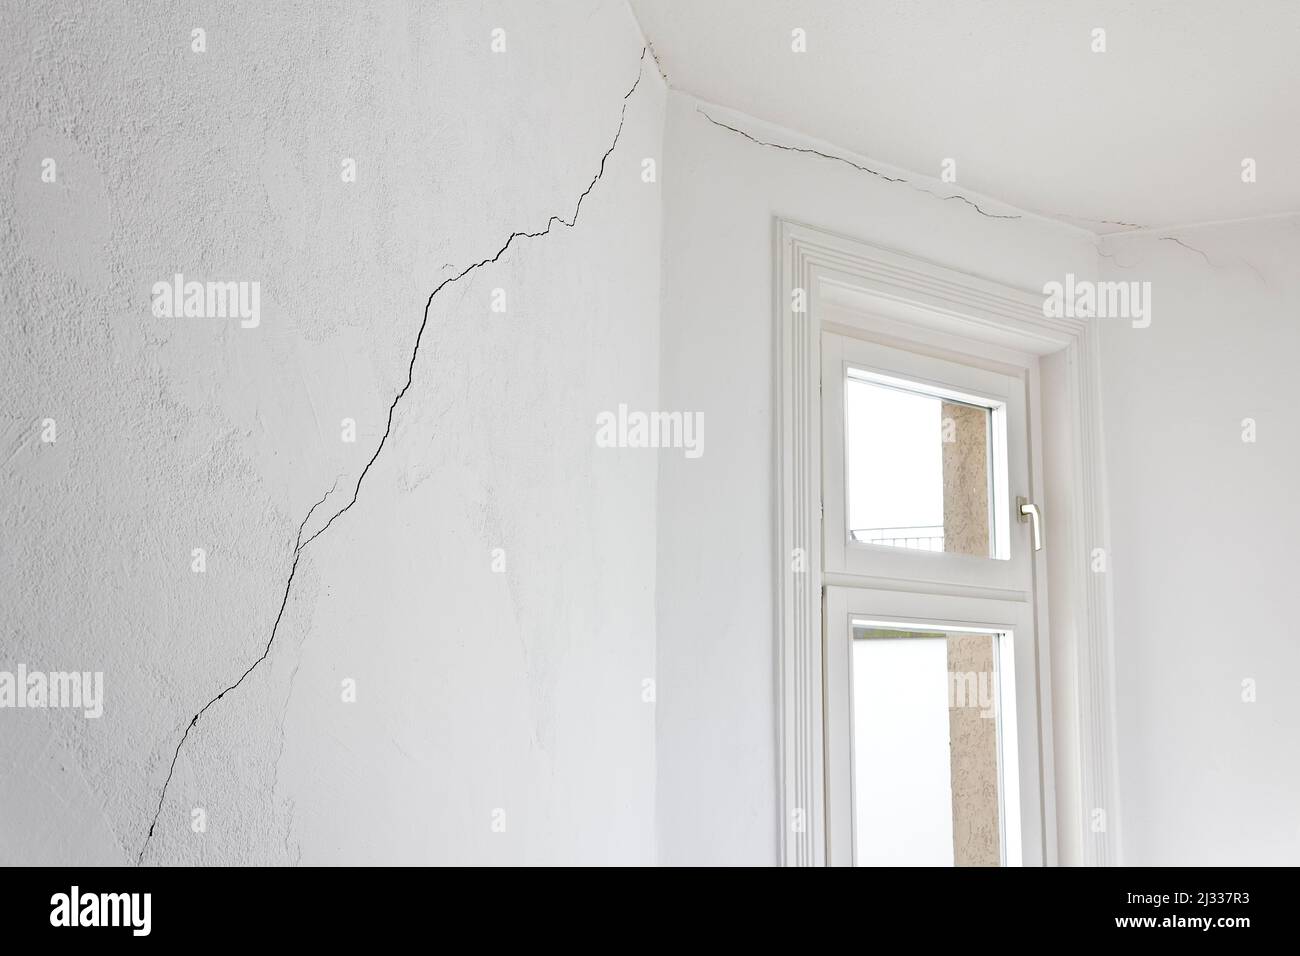 Gebäudeschadenkonzept: Sehr langer Riss in der Wand einer Wohnung oder Wohnung in einem alten Haus, verursacht durch ein Erdbeben oder Erdrutsch. Stockfoto